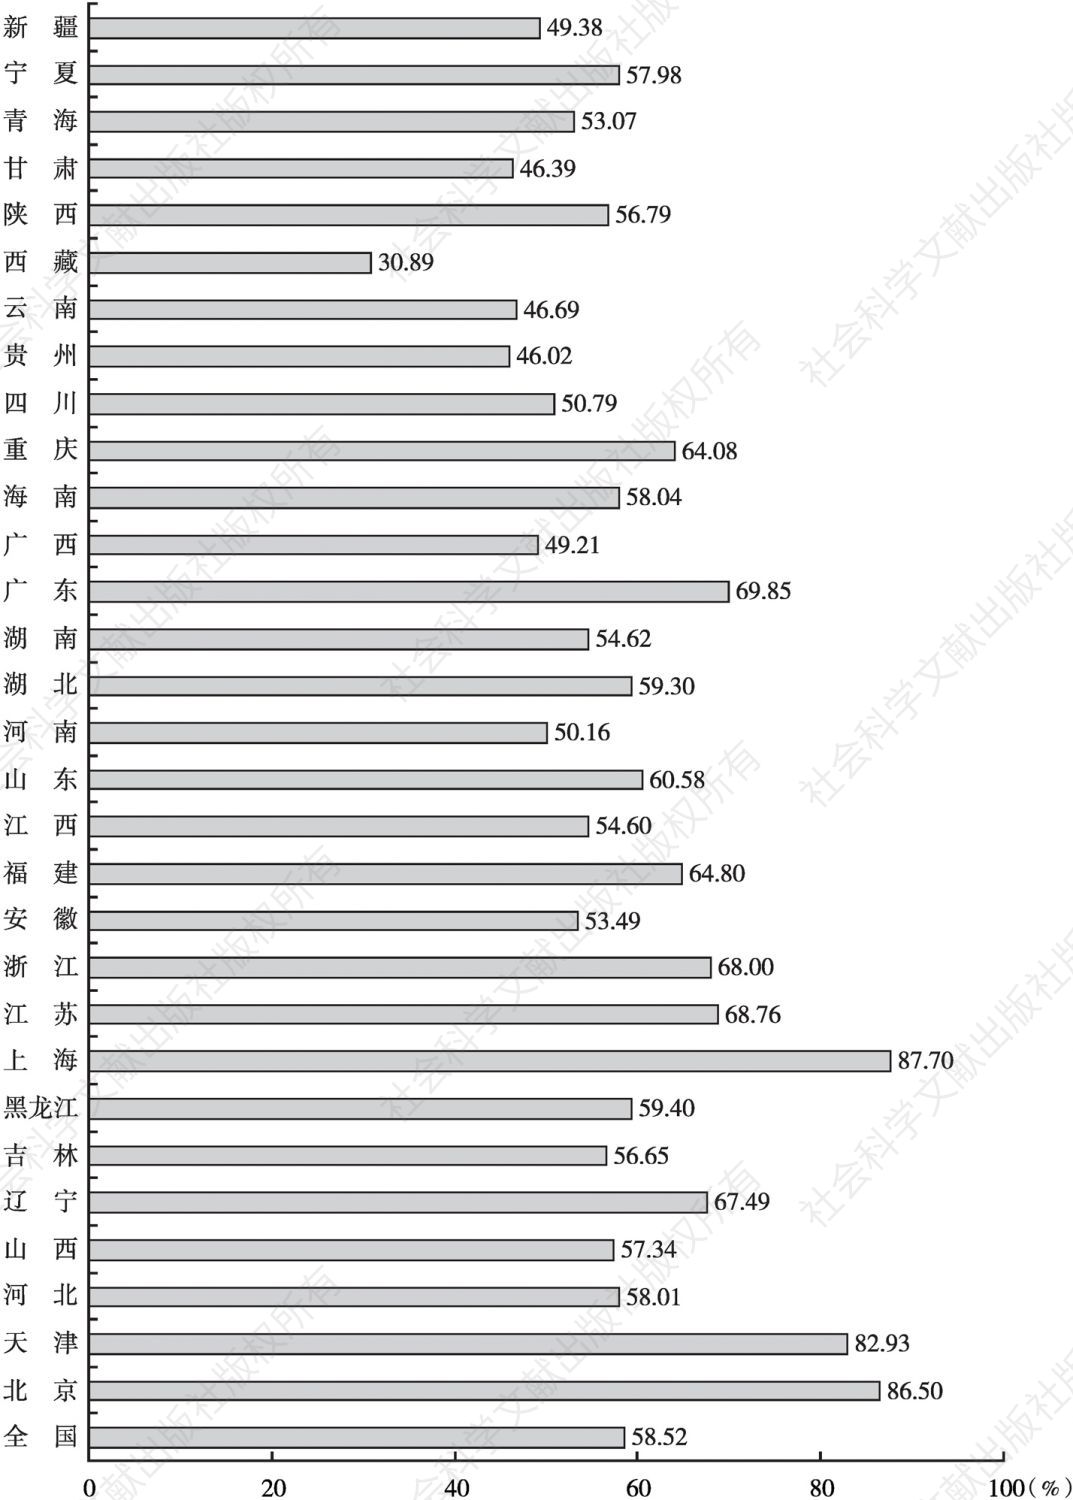 图1 2017年河南常住人口城镇化率与其他省份及全国的比较